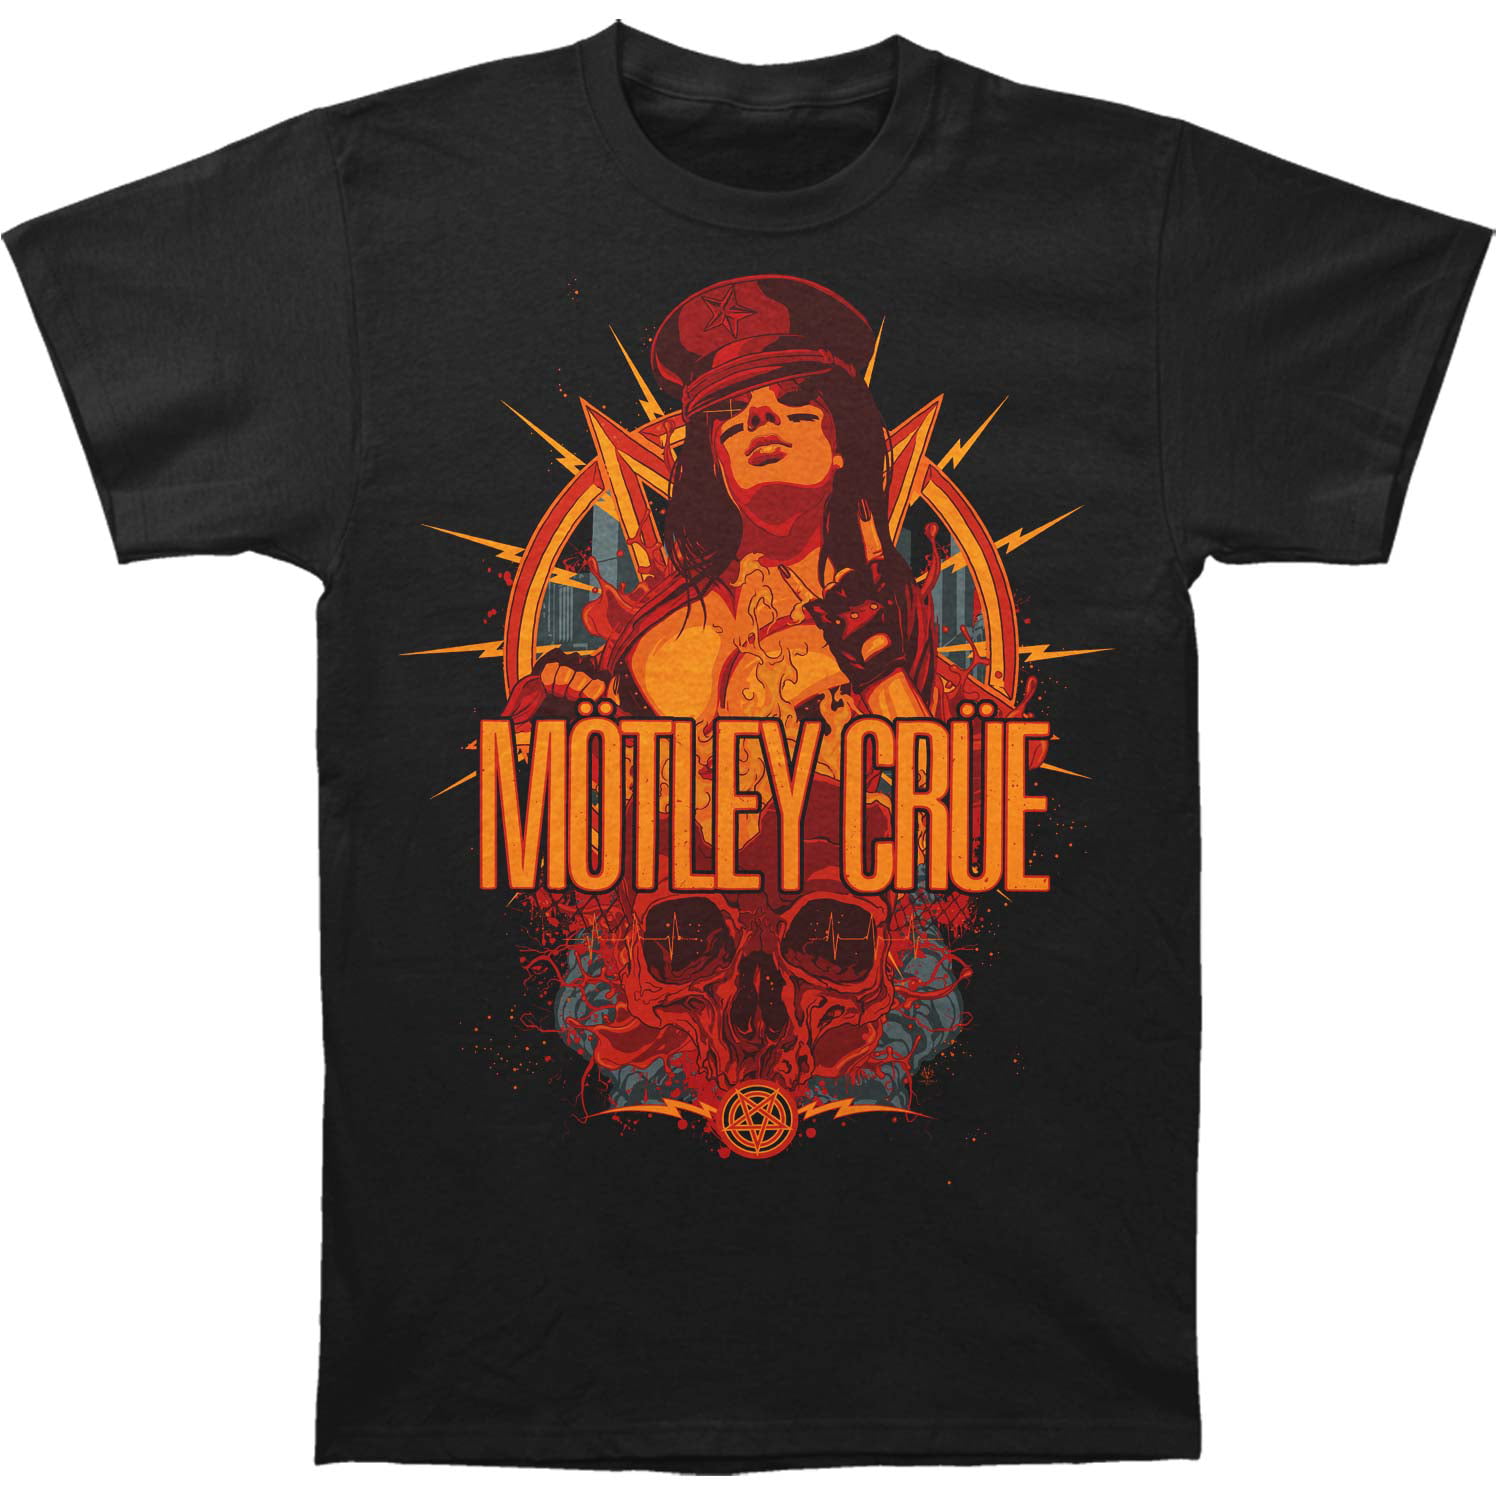 Motley Crue - Motley Crue Men's MC Girl Tee Slim Fit T-shirt Black ...